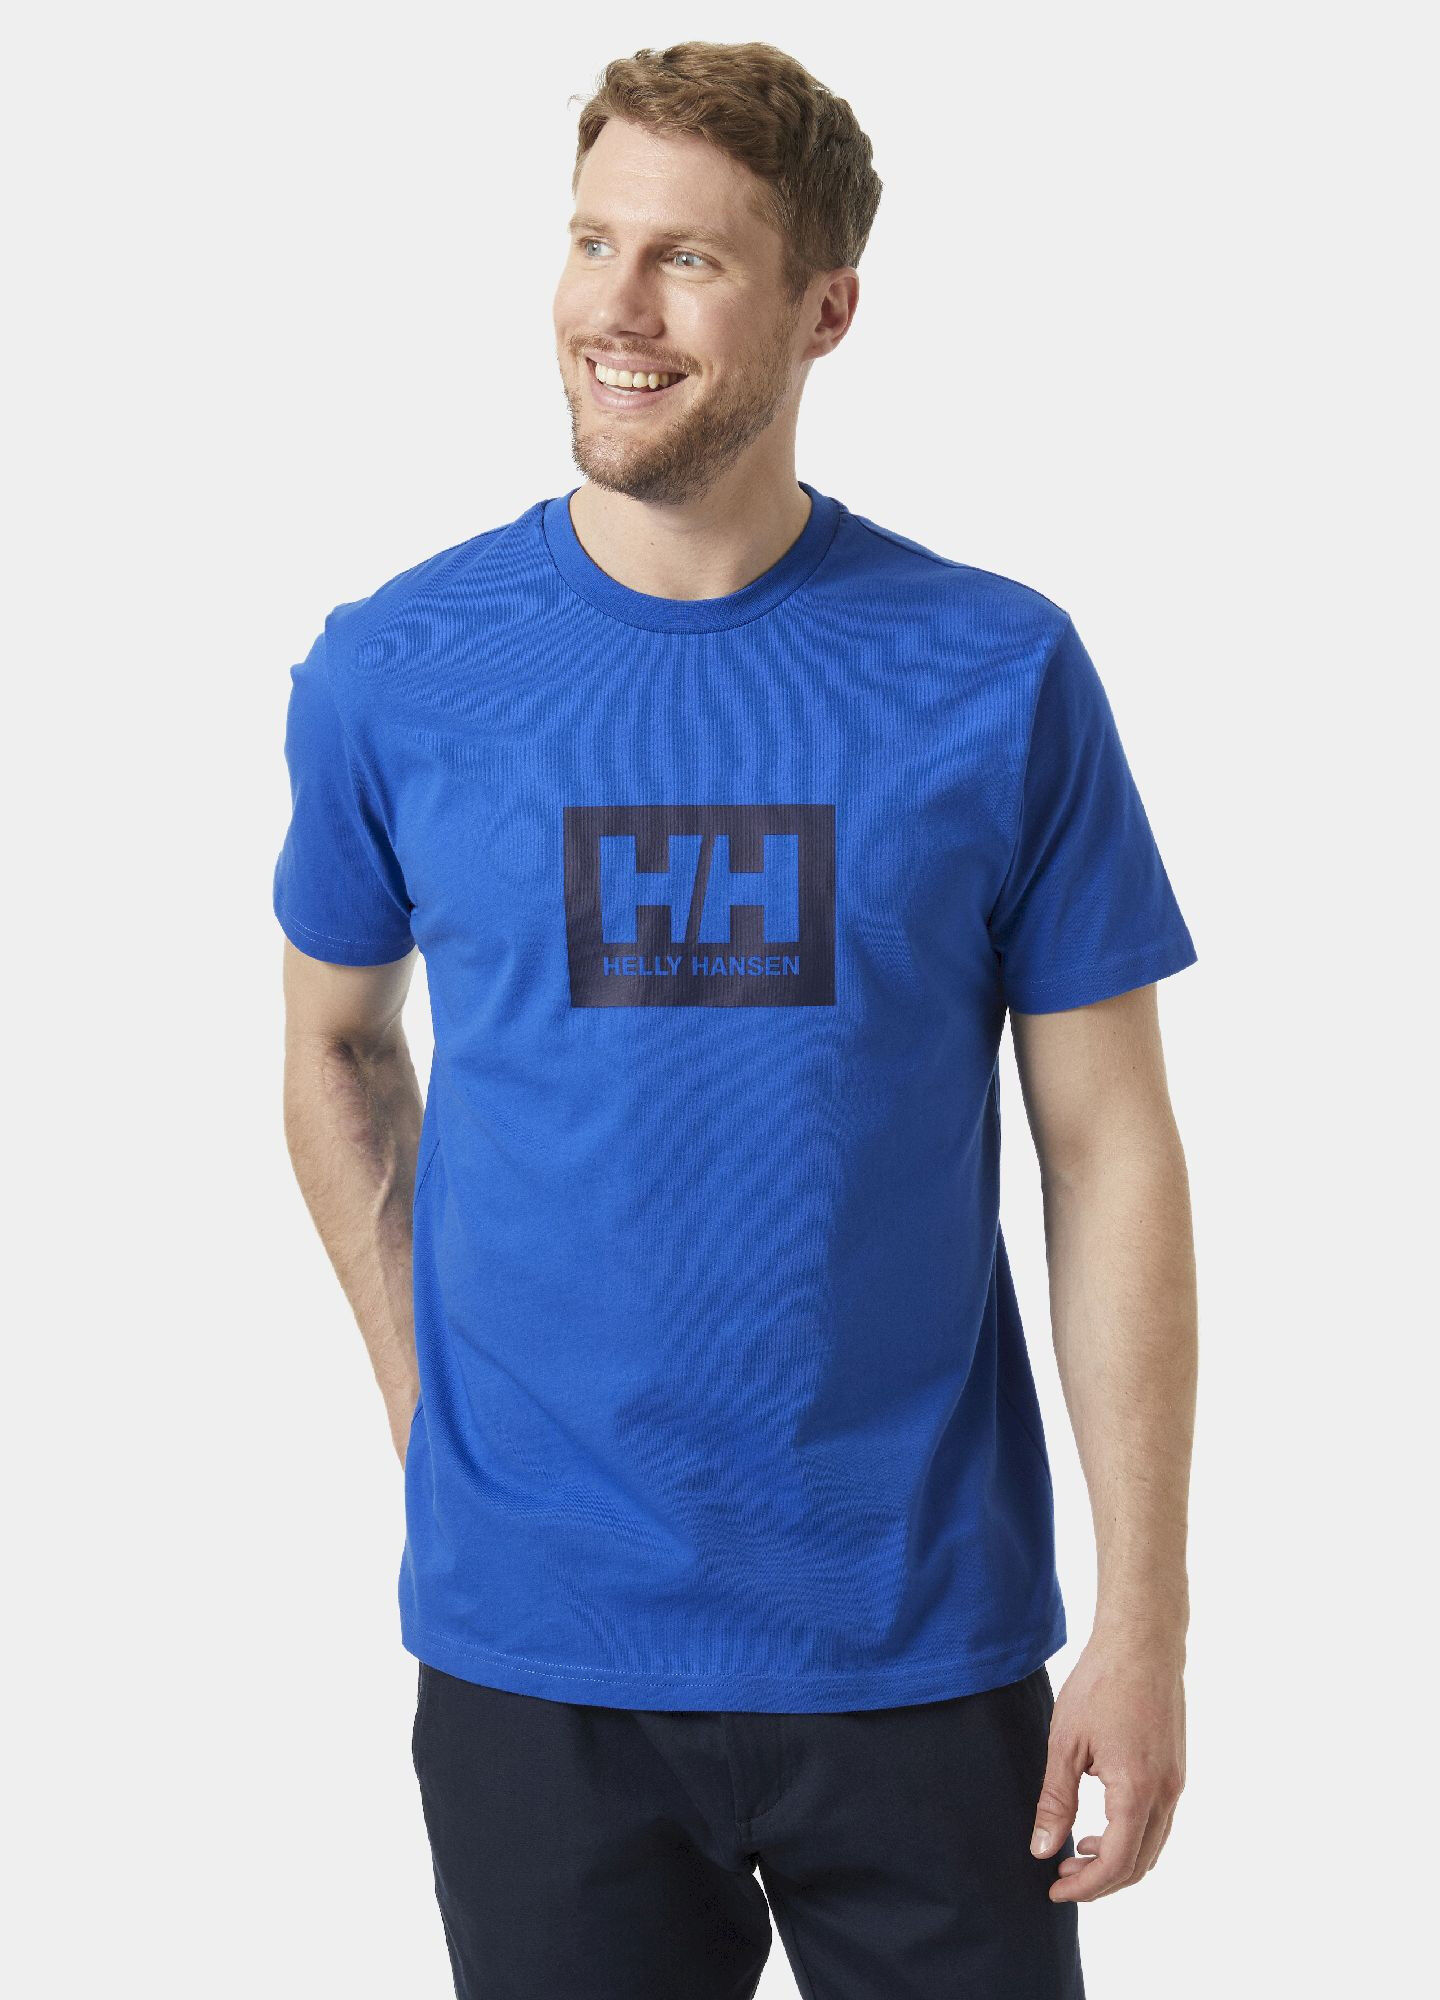 Helly Hansen HH Box T - T-shirt - Uomo